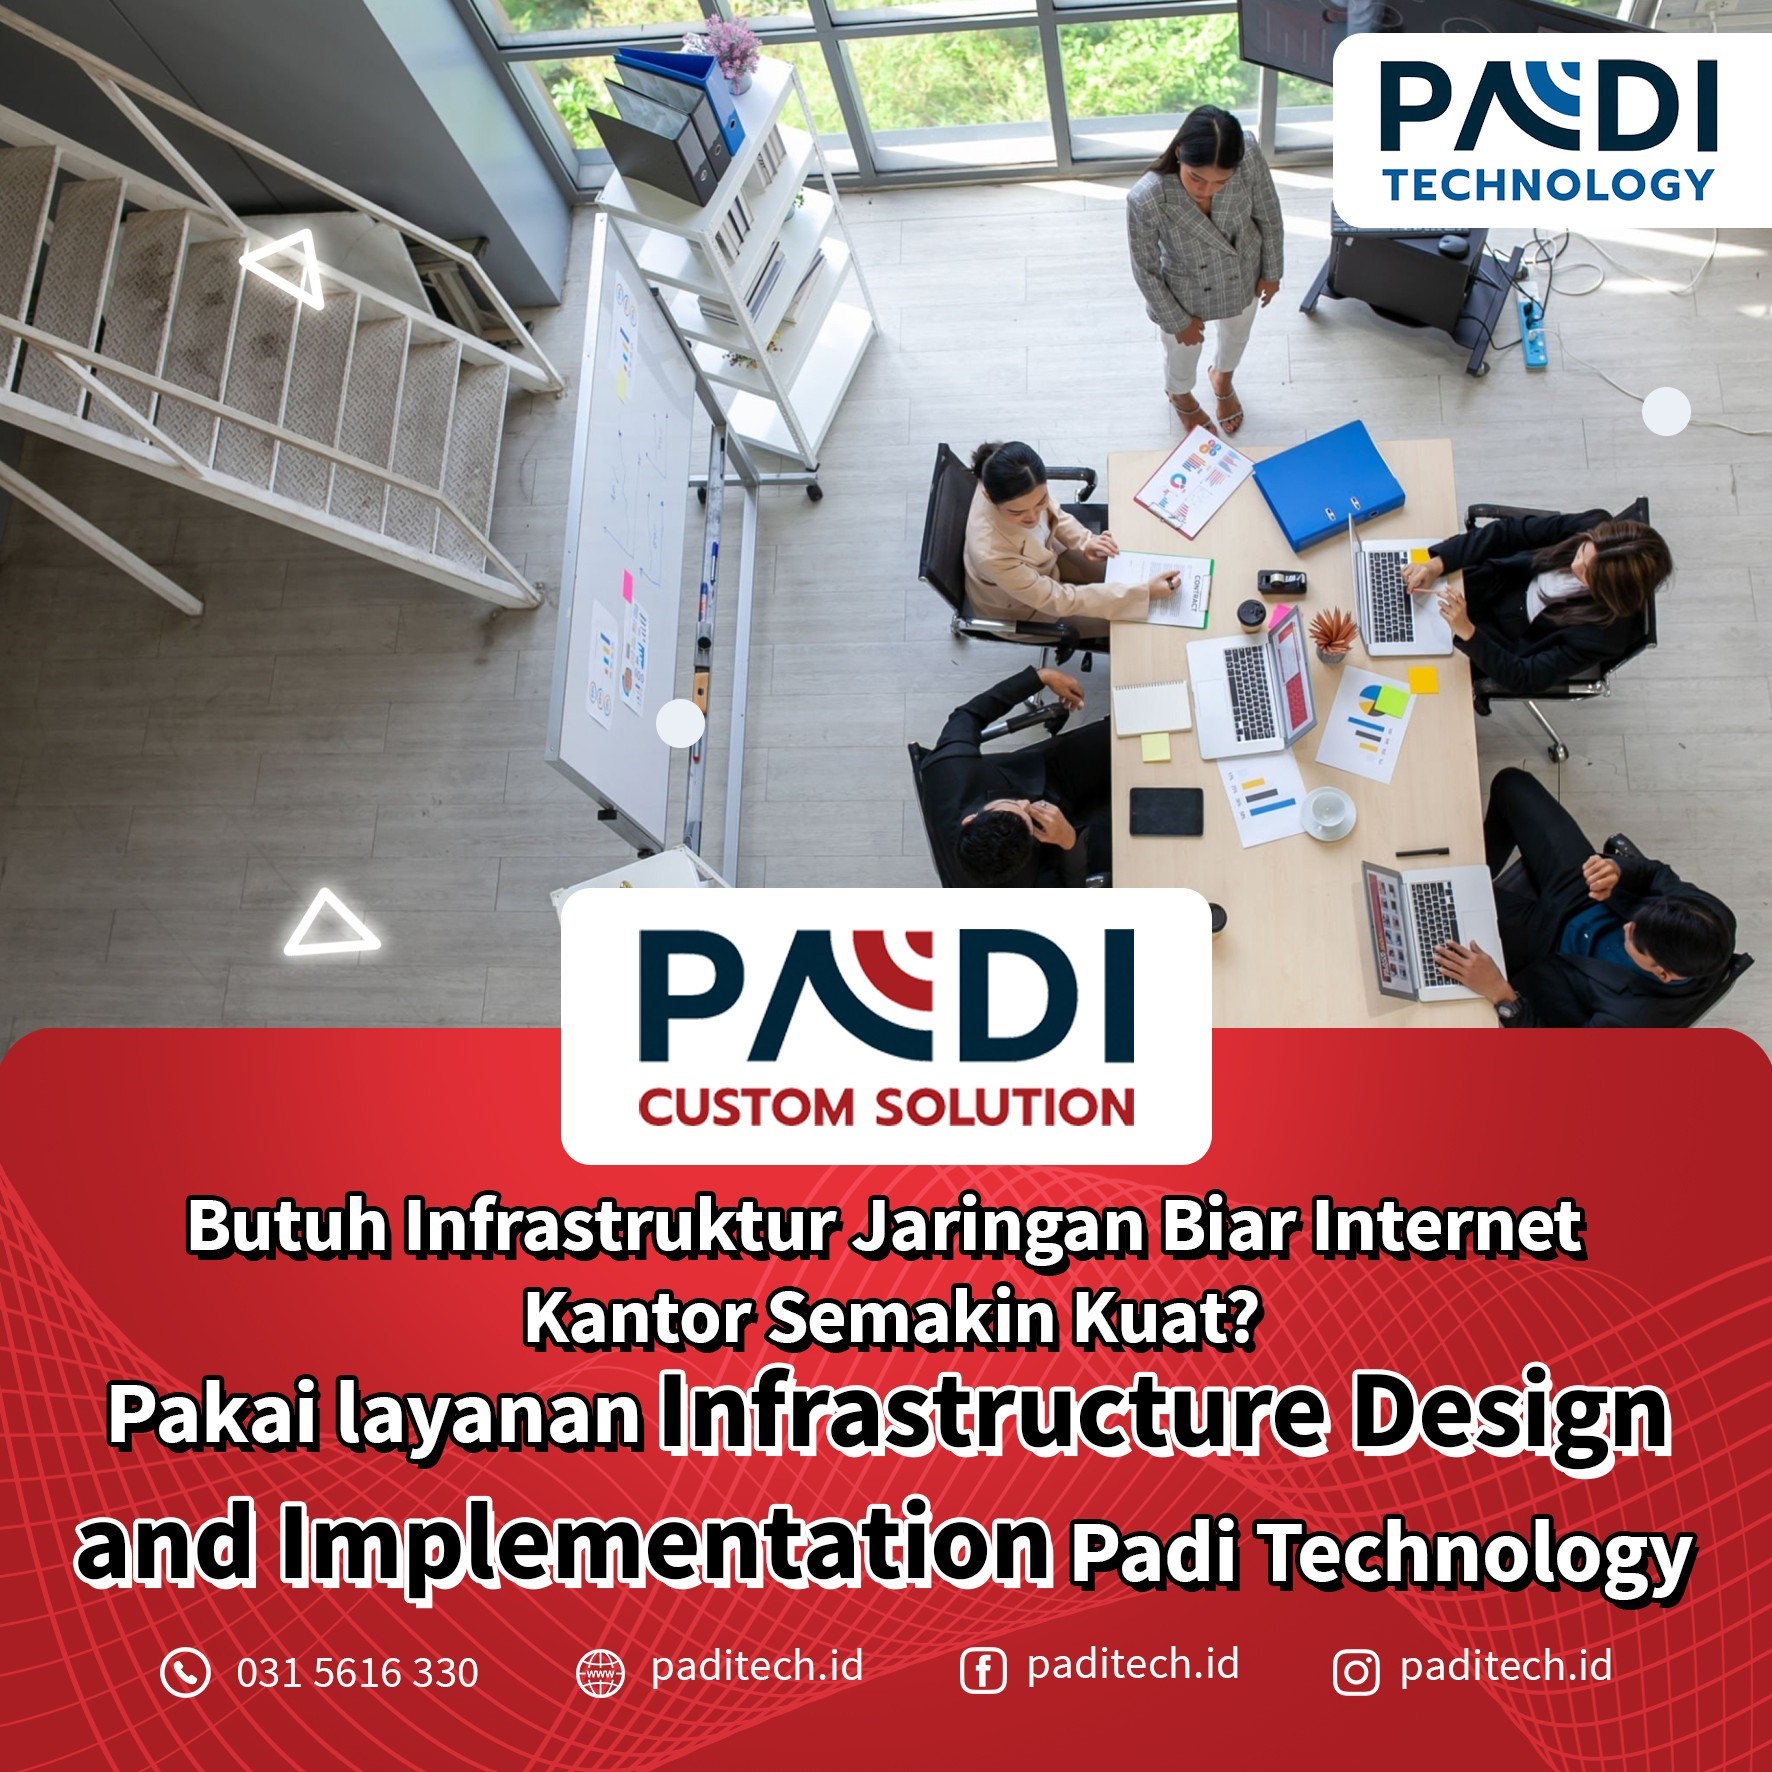 Manfaatkan Layanan Desain dan Implementasi Infrastruktur bagi jaringan perusahaan Anda bersama Padi Custom Solution by Technology, Your IT Best Friend!